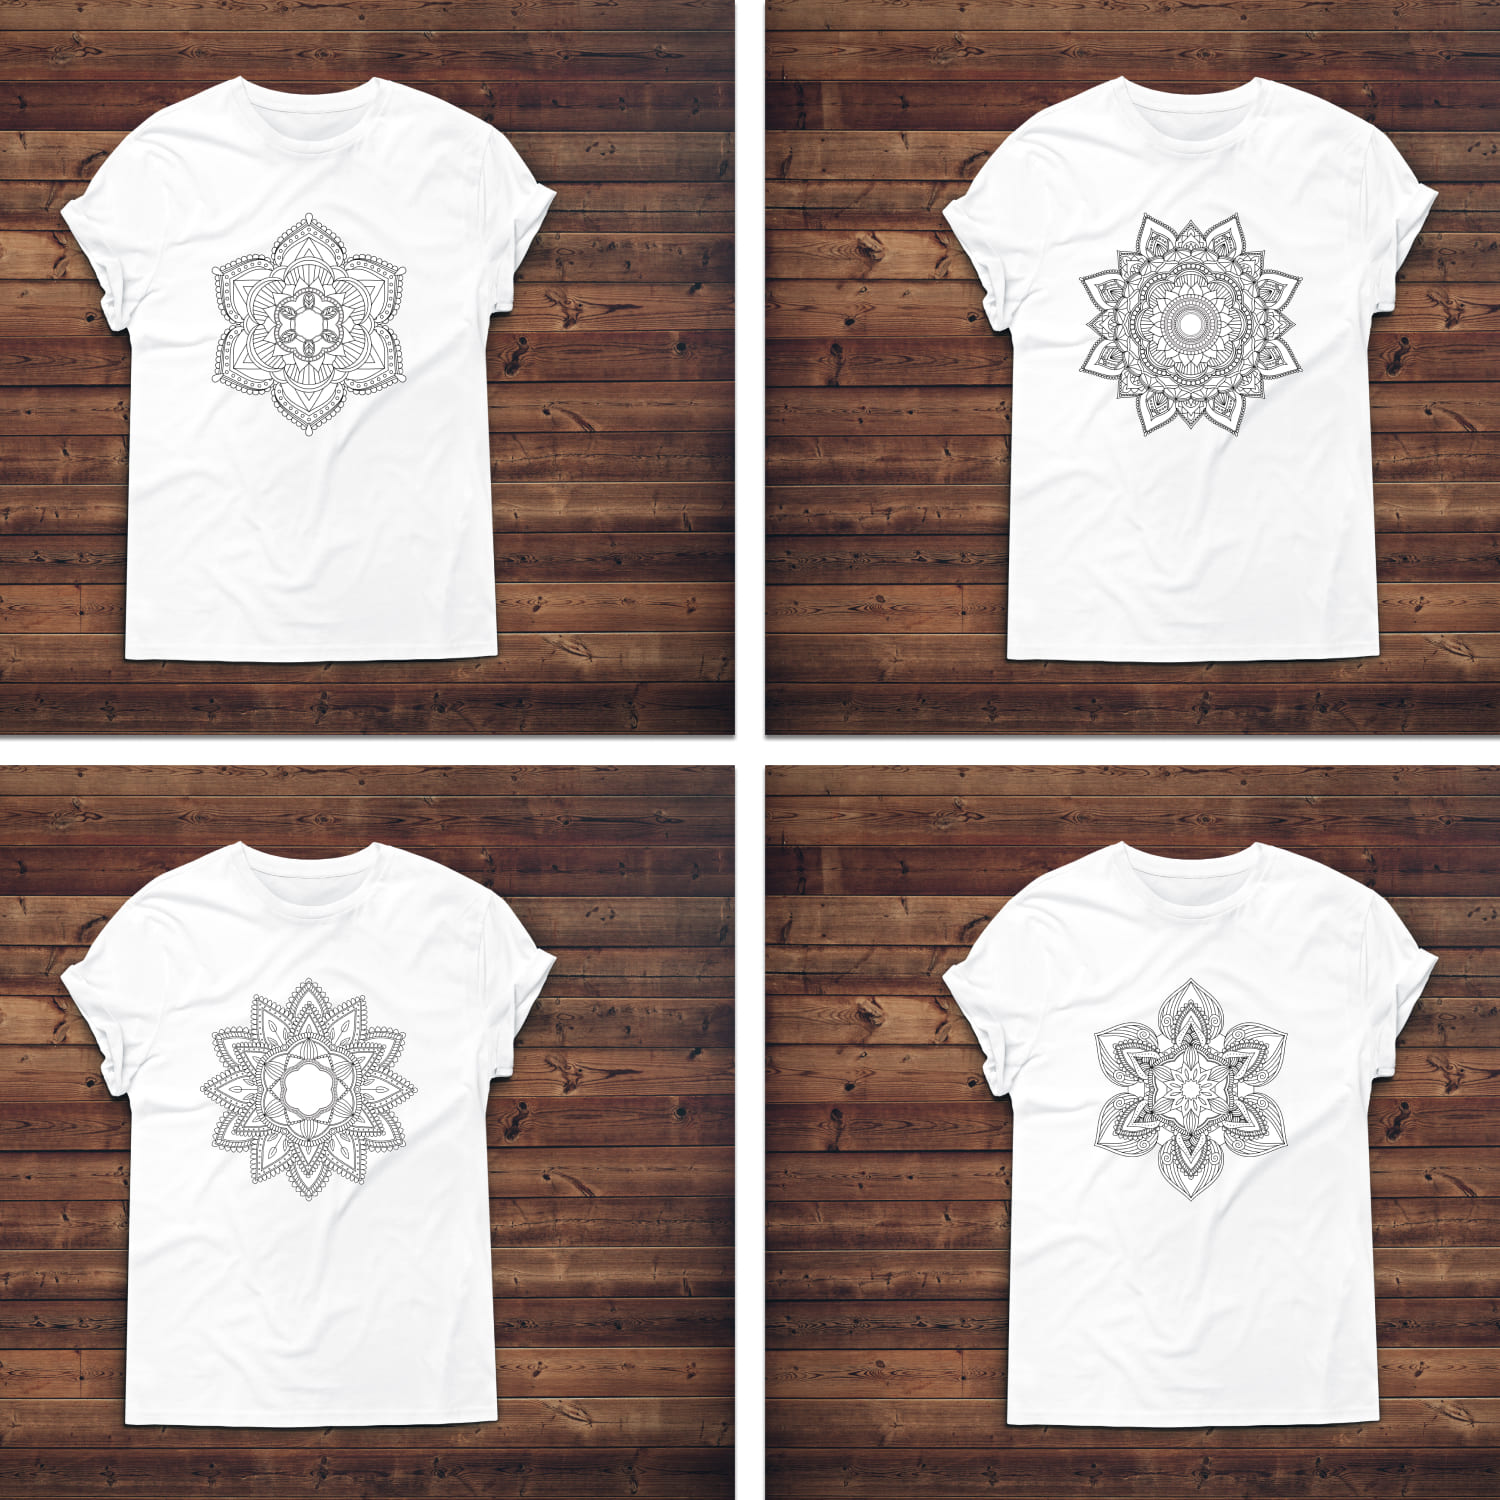 Lotus Mandala T-shirt Designs Bundle cover.